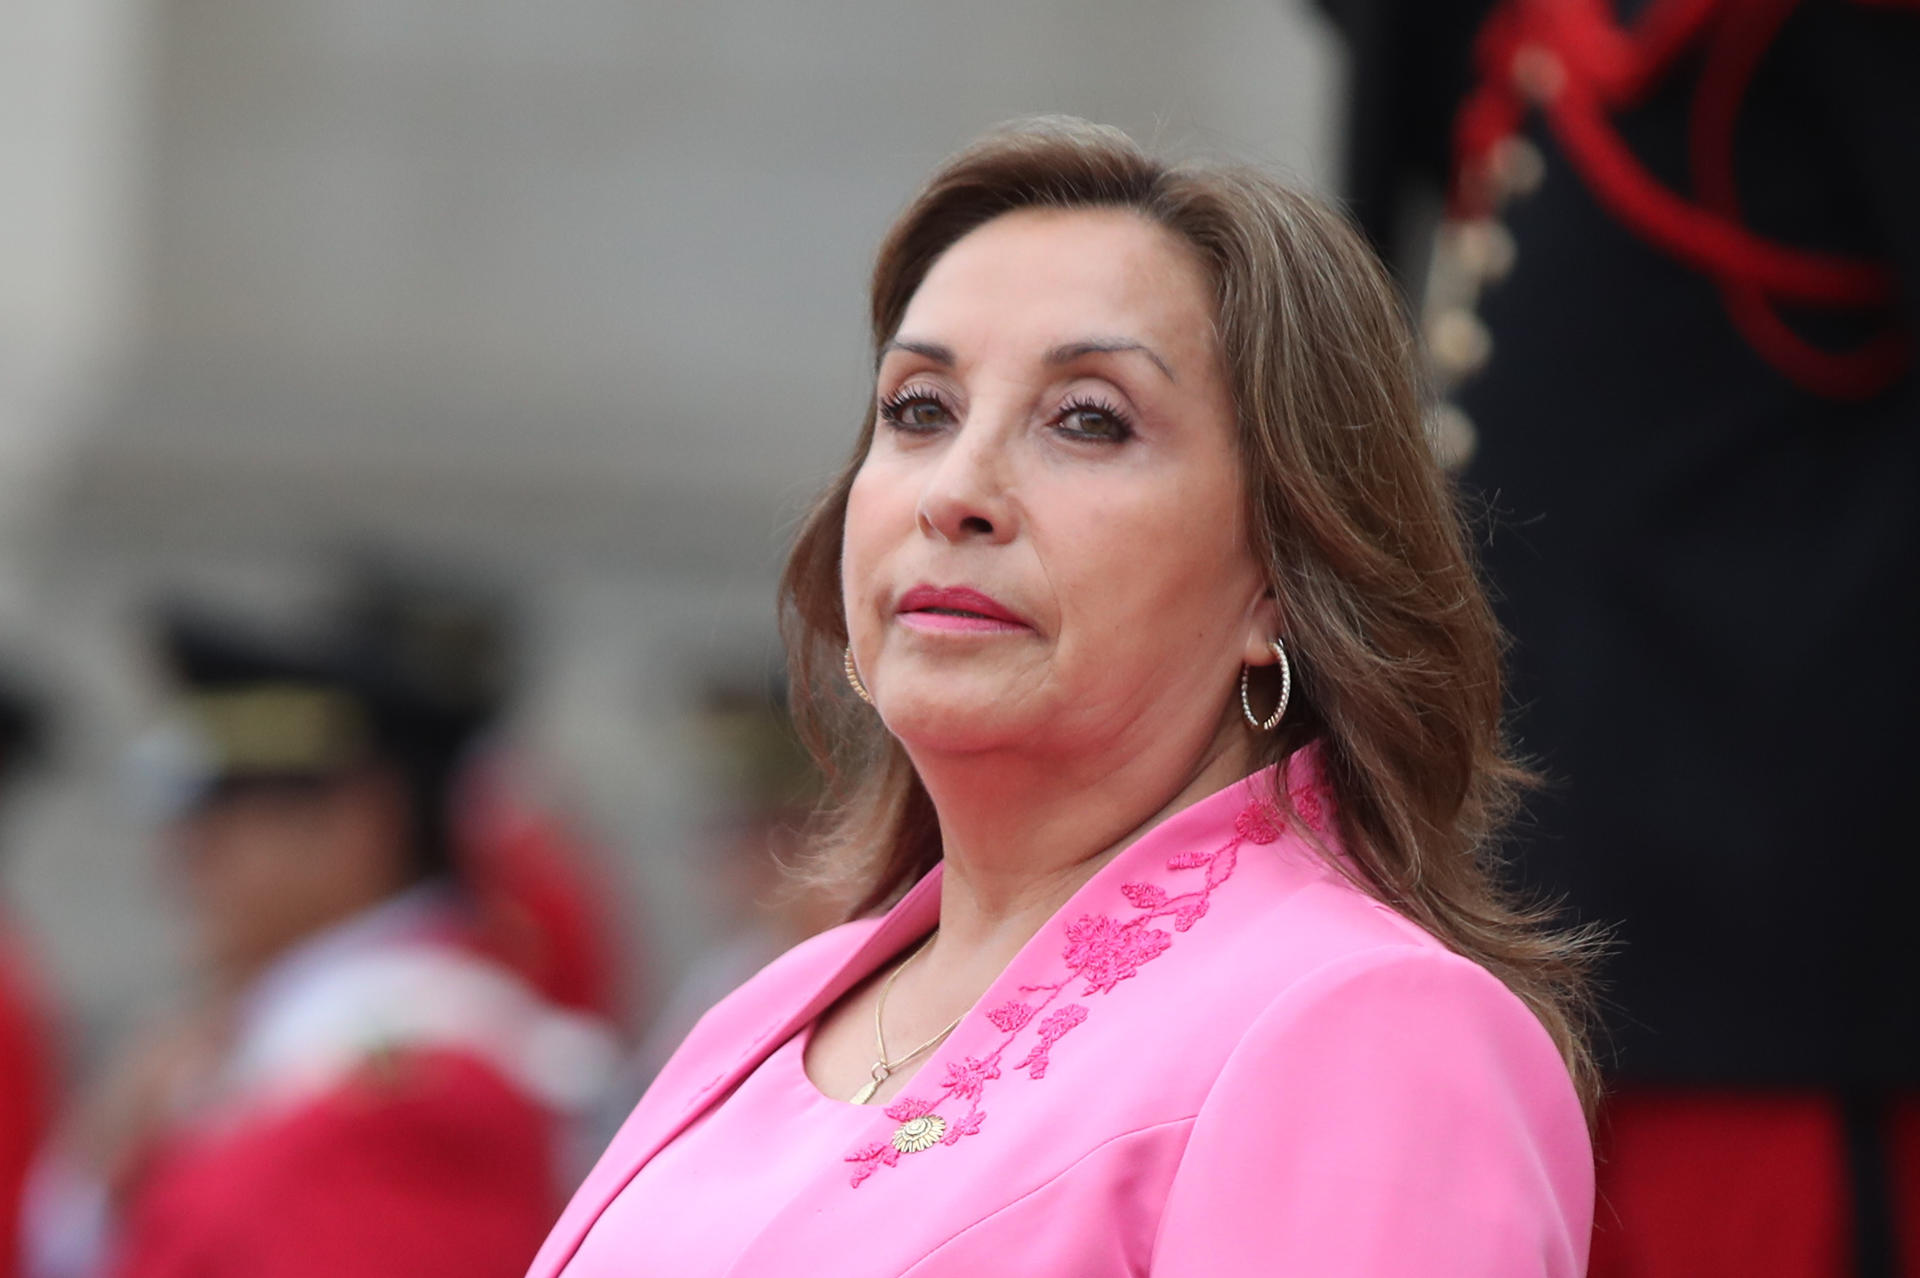 Policía halló relojes Rolex durante allanamiento a presidenta peruana